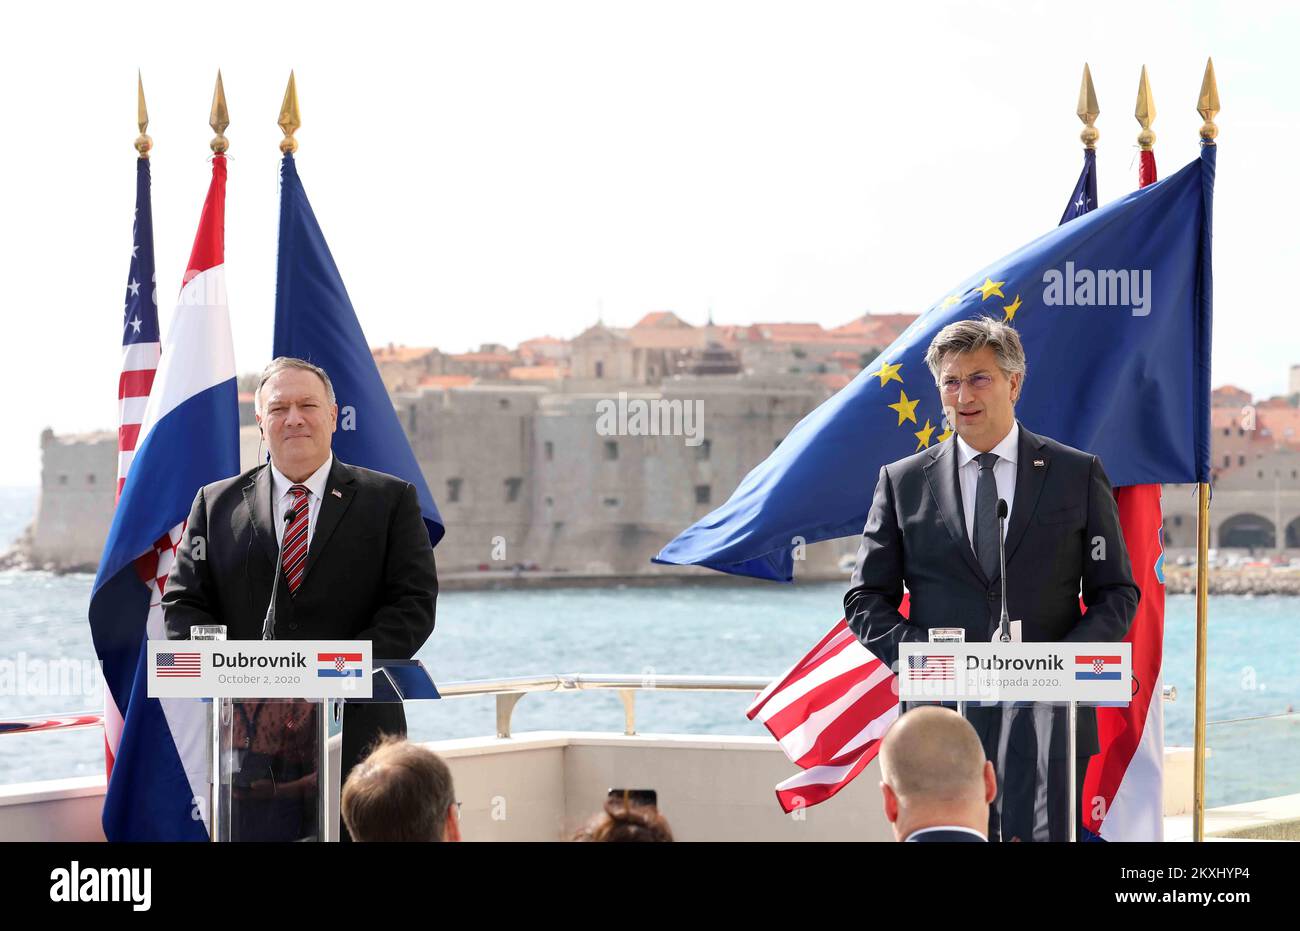 ÉTATS-UNIS Le Secrétaire d'Etat Mike Pompeo a reçu le Premier ministre croate Andrej Plenkovic dans le cadre de sa tournée européenne à l'Hôtel Excelsior à Dubrovnik, en Croatie, sur 02 octobre 2020. Ils discutent de l'abolition de l'obligation de visa pour les Croates voyageant aux Etats-Unis, de l'intention de la Croatie d'acheter des avions de combat F-16 bloc 70 et des possibilités de coopération plus étroite entre les Etats-Unis et la Croatie dans des domaines clés d'intérêt mutuel, y compris la coopération en matière de défense, la relation d'investissement croissante entre les Etats-Unis et la Croatie, Et les efforts soutenus de la Croatie pour faire progresser l'intégration des Balkans occidentaux. Photo : Banque D'Images